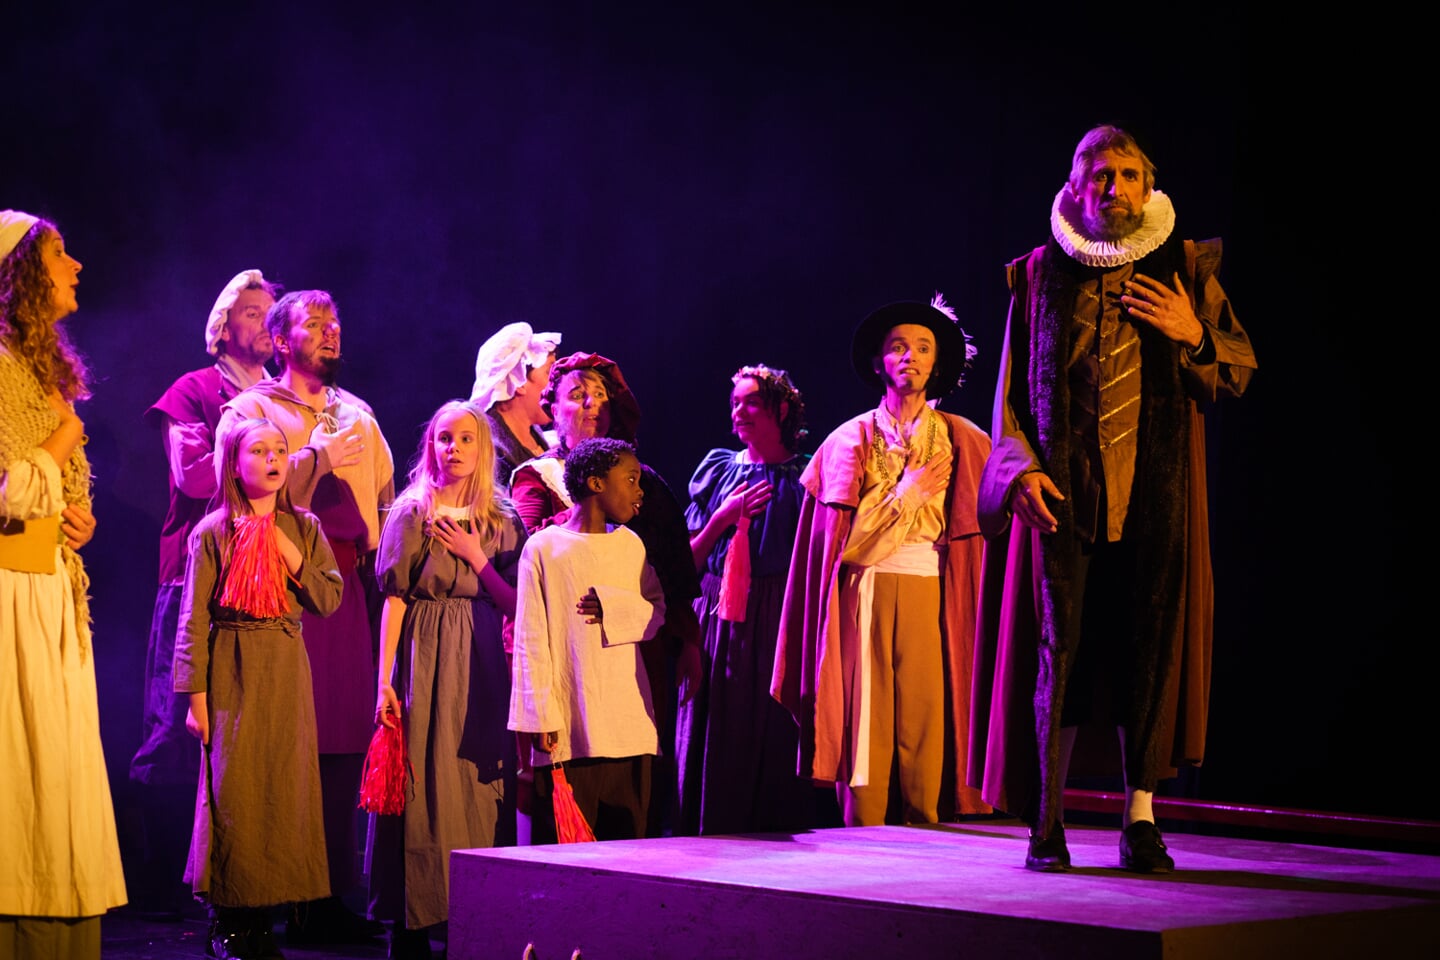 Een indruk van de musical die vorig jaar in Alkmaar werd opgevoerd naar aanleiding van 450 jaar ontzet. Foto: Ronald de Jong